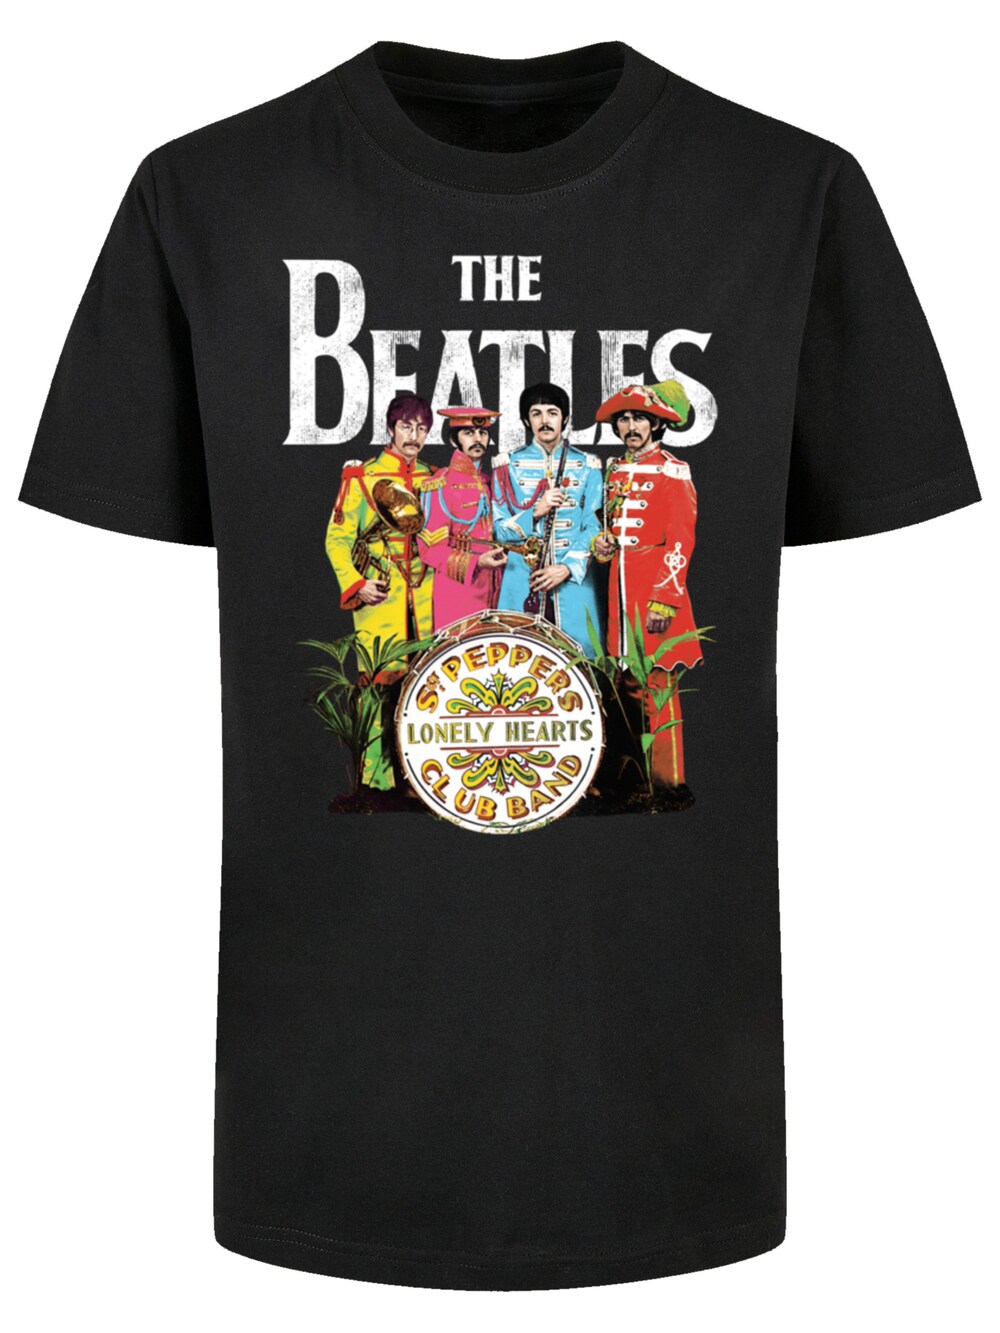 Рубашка F4Nt4Stic The Beatles Sgt Pepper, черный